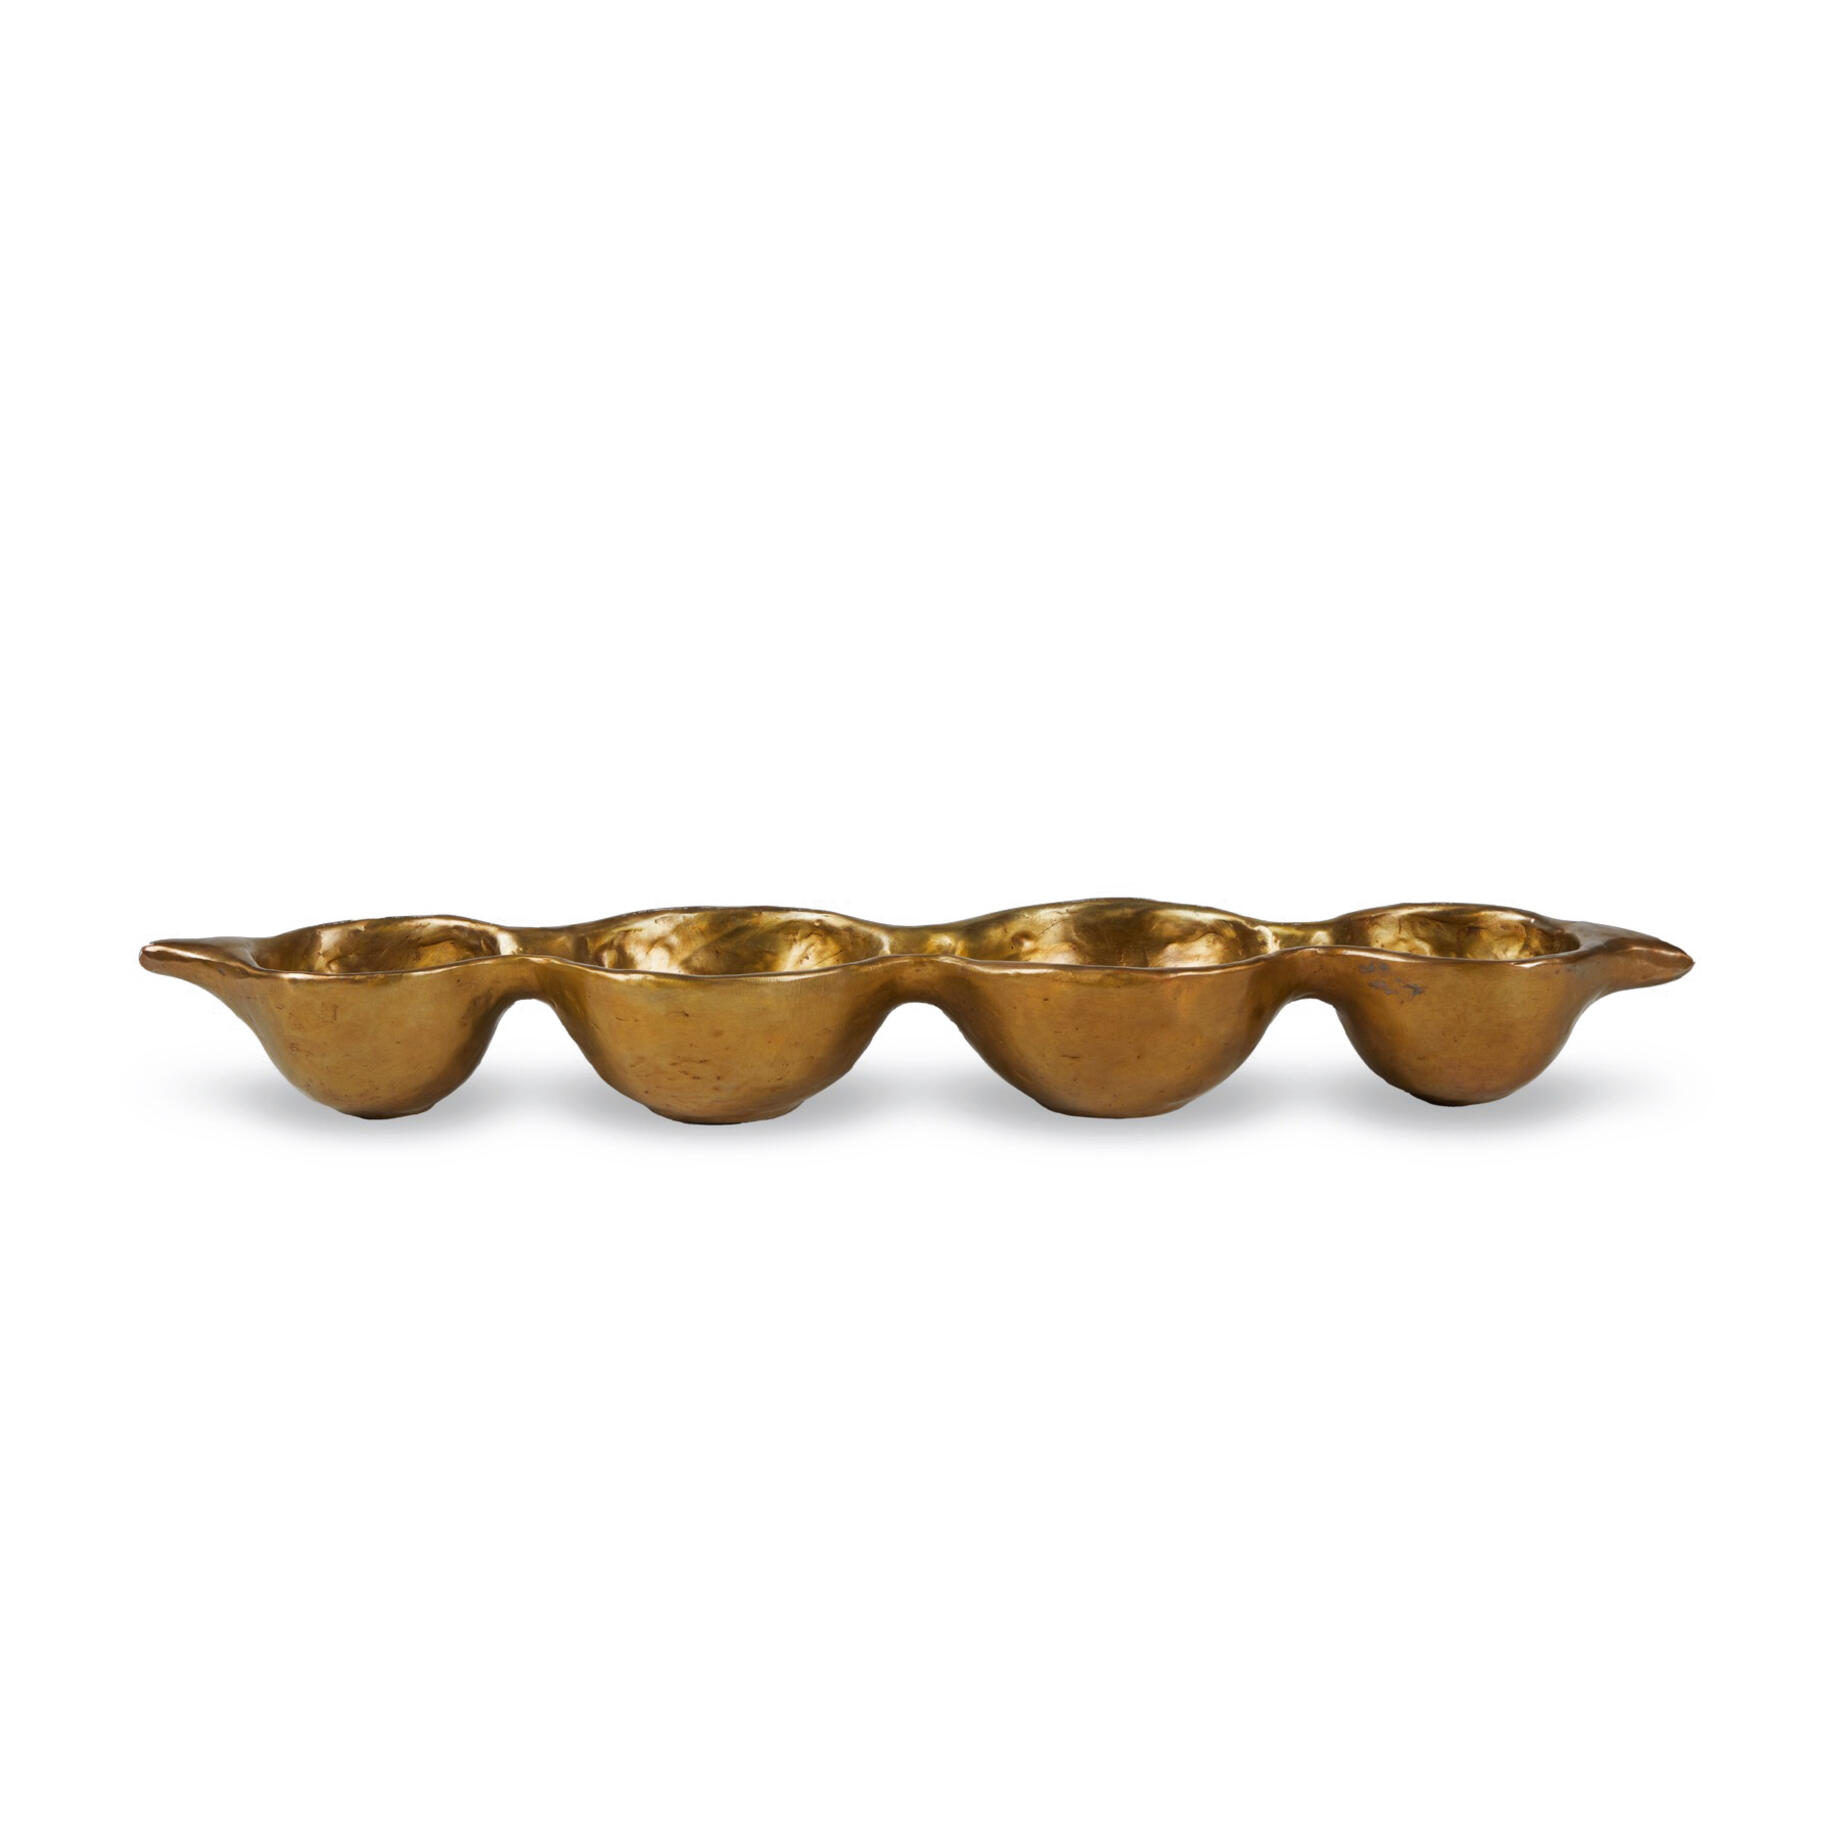 Orianna Long Pod Vessel, Golden Bronze